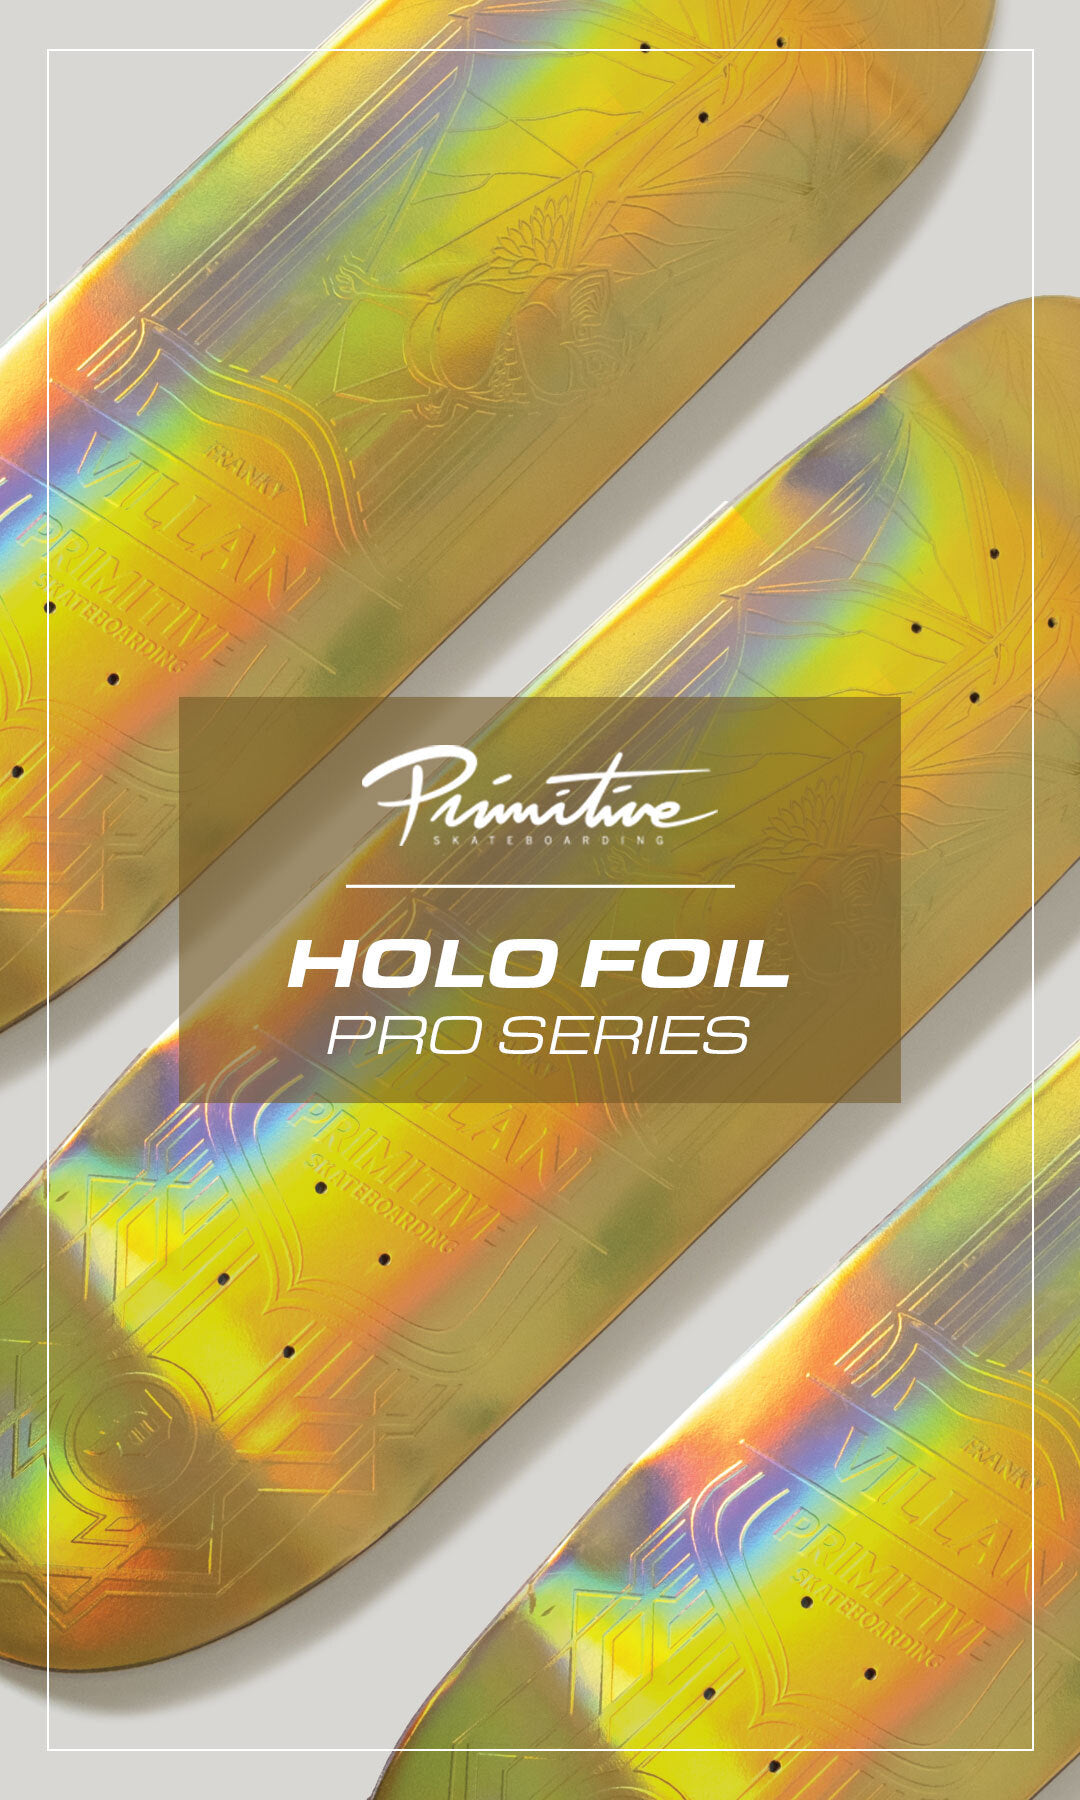 Holo Foil Pro Series